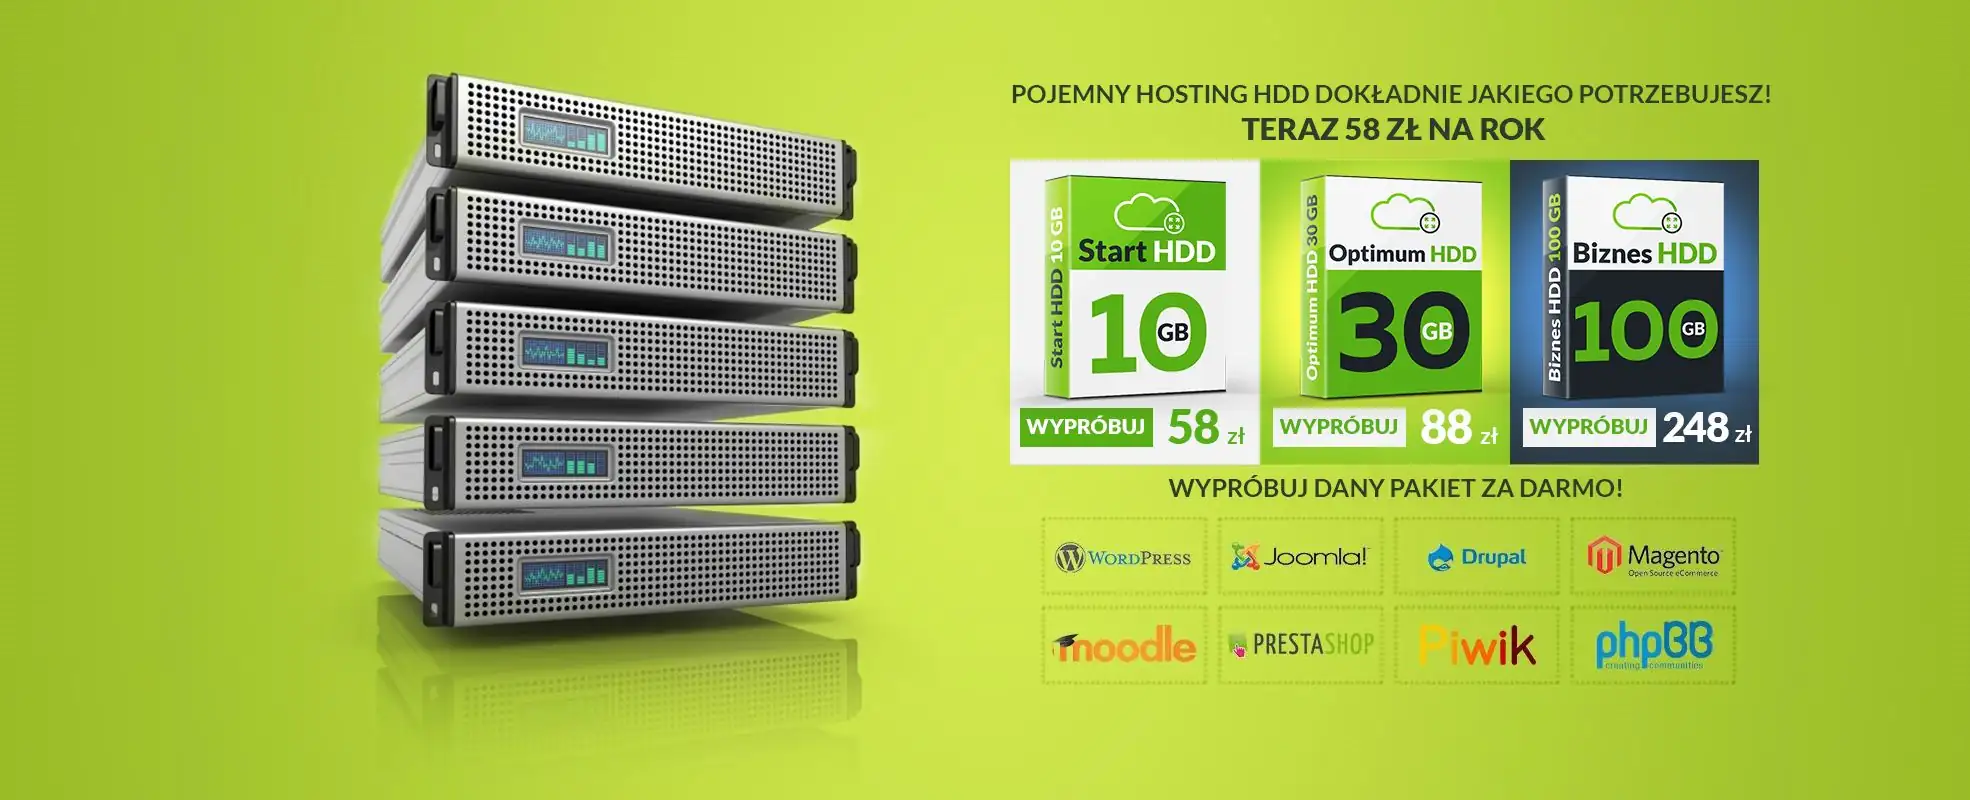 Zdjęcie oferty hostingu HDD w promocyjnej cenie od 58zł brutto i link do specyfikacji i zamówienia hostingu HDD